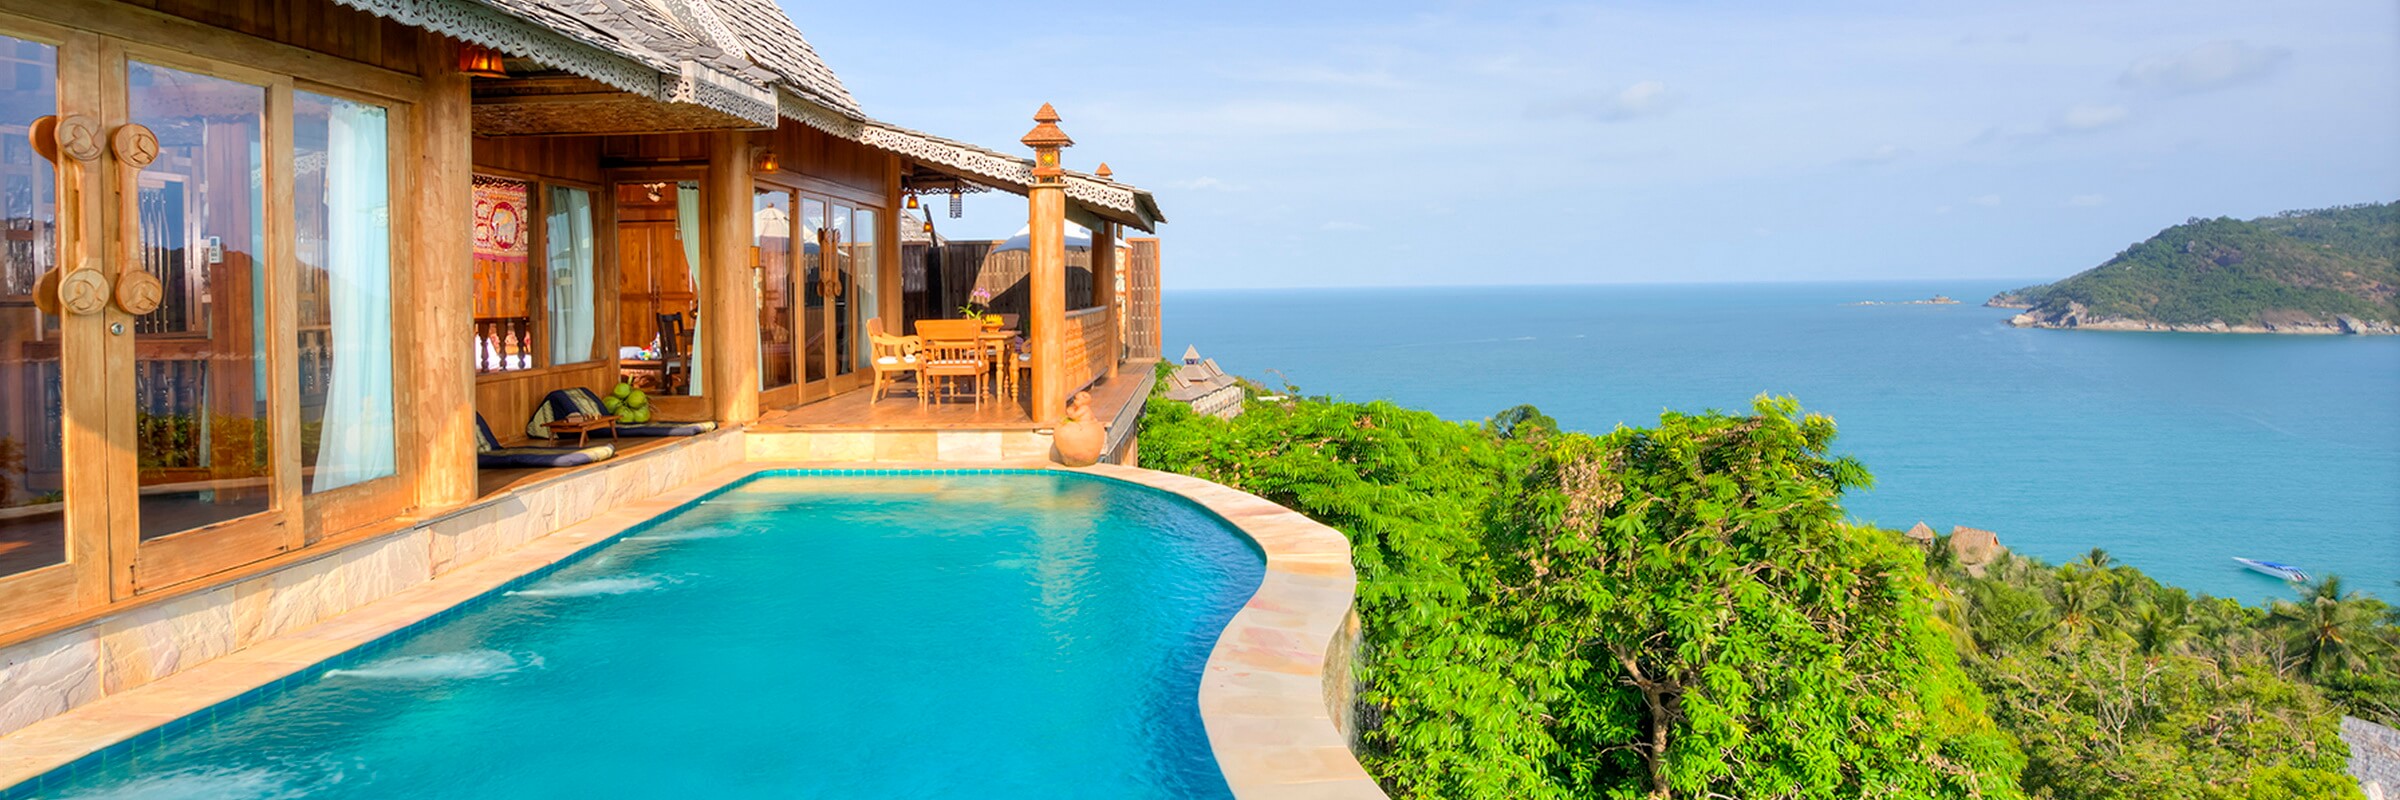 Aussenansicht der Grand Sea View Pool Villen des Santhiya Koh Phangan Resort & Spa mit eigenem Pool und Panorama Meerblick